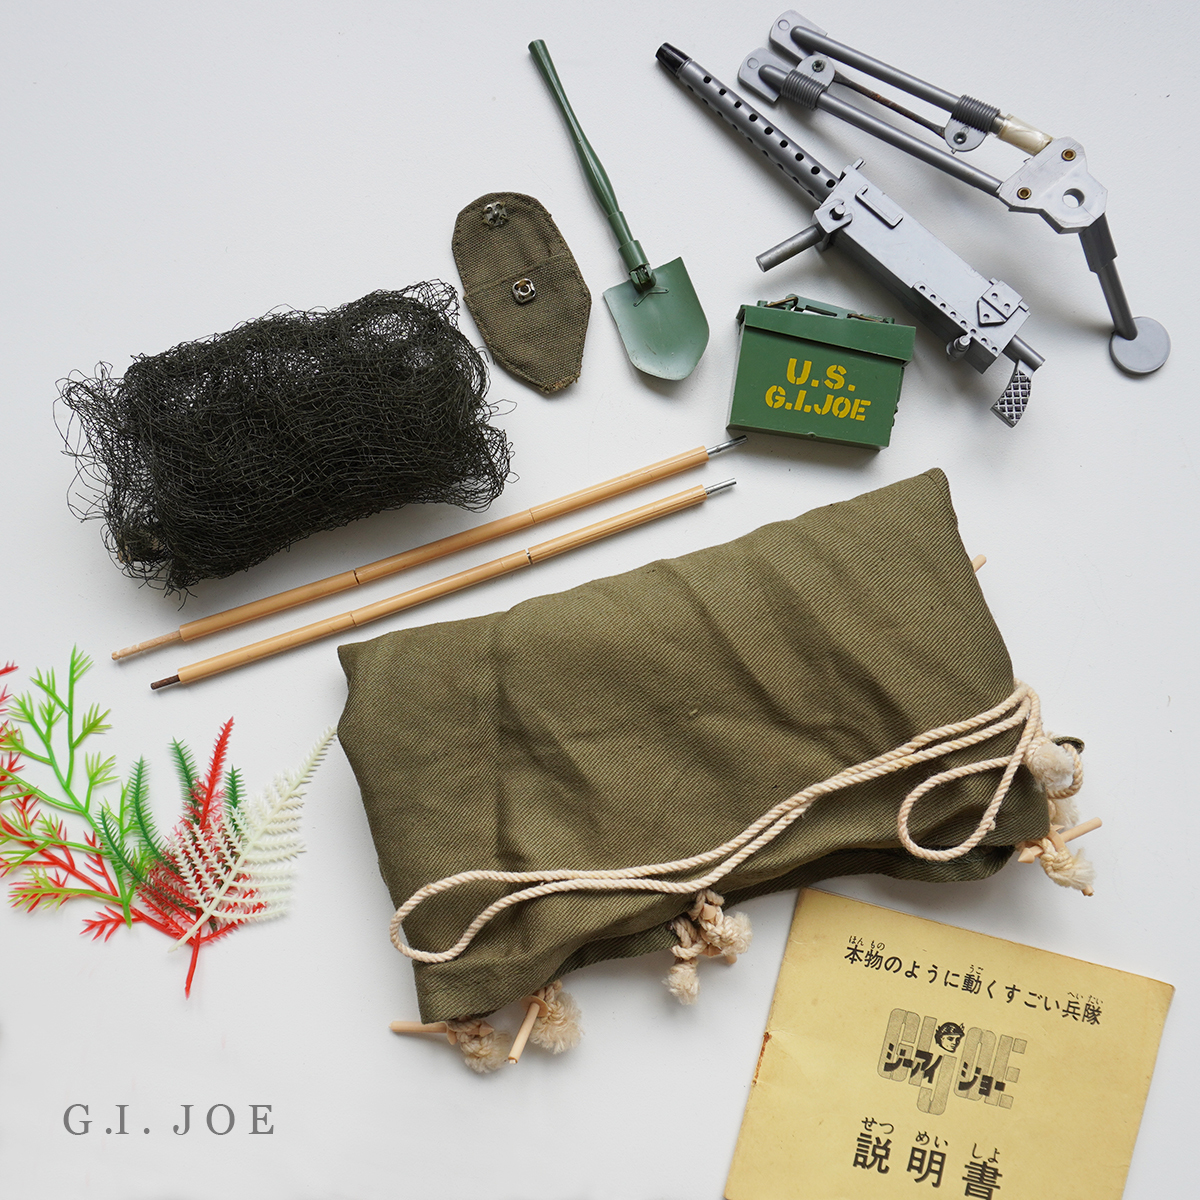  супер редкий очень редкий с ящиком 1966 подлинная вещь три . торговля импорт GI JOE ACTION SOLDIER BY HASBRO палатка машина ружье комплект bi Burke G.I. Joe - sbro